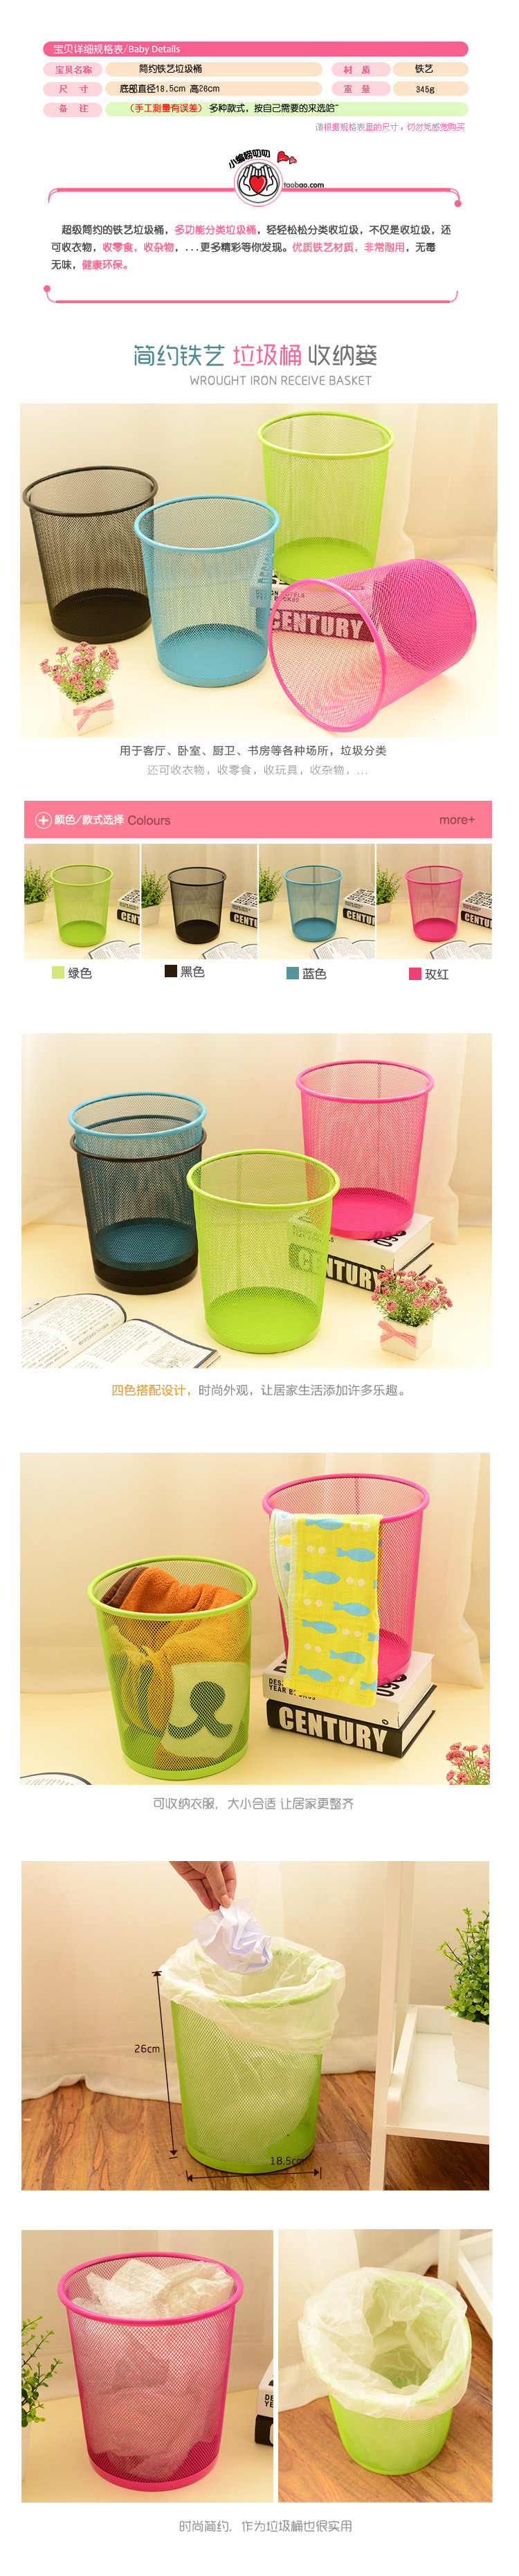 小号创意居家办公收纳用品铁丝网纸篓彩色环保圆形垃圾桶卫生纸篓详情1